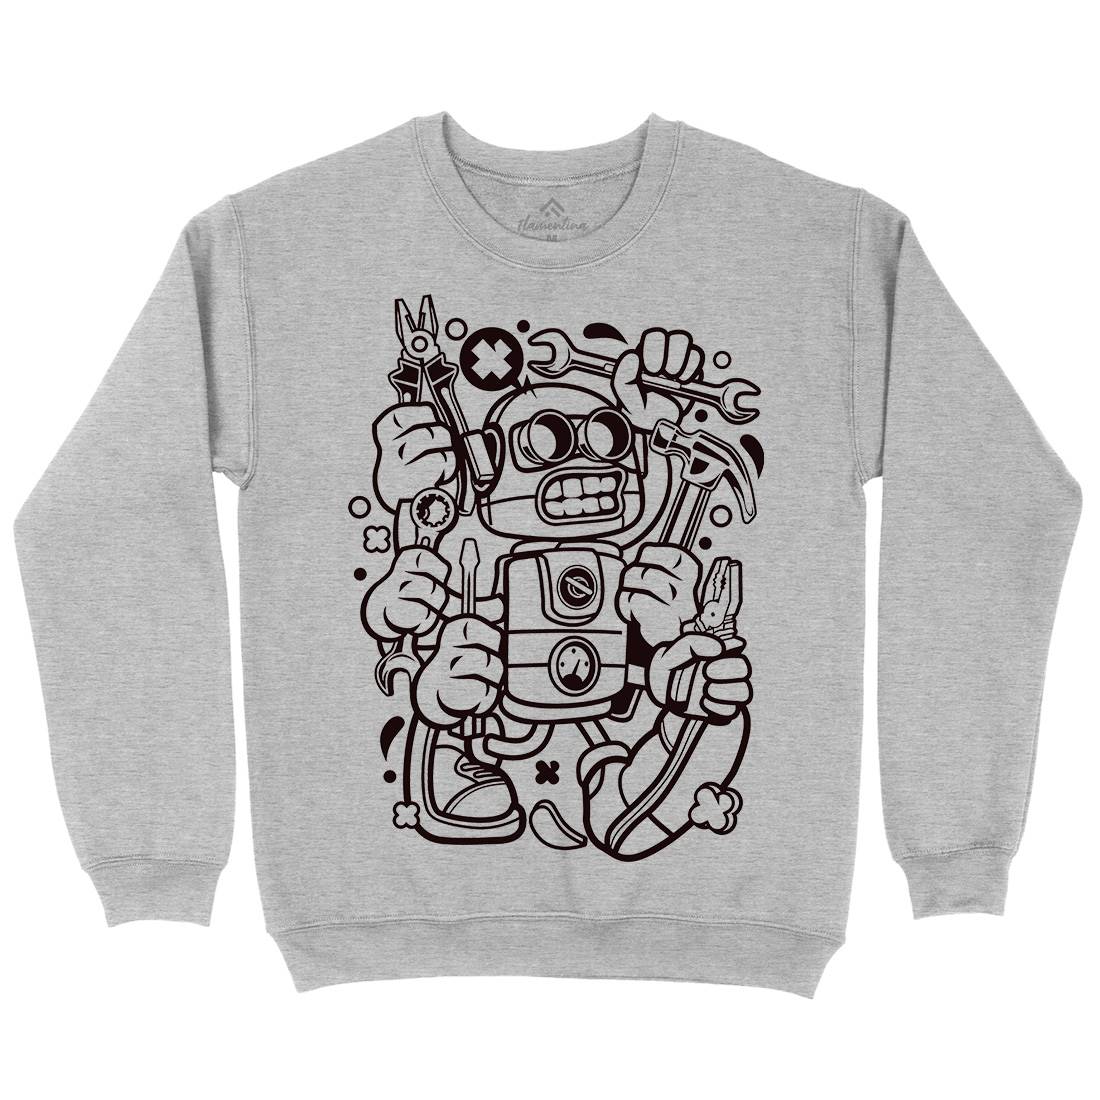 Tools Robot Kids Crew Neck Sweatshirt Work C283